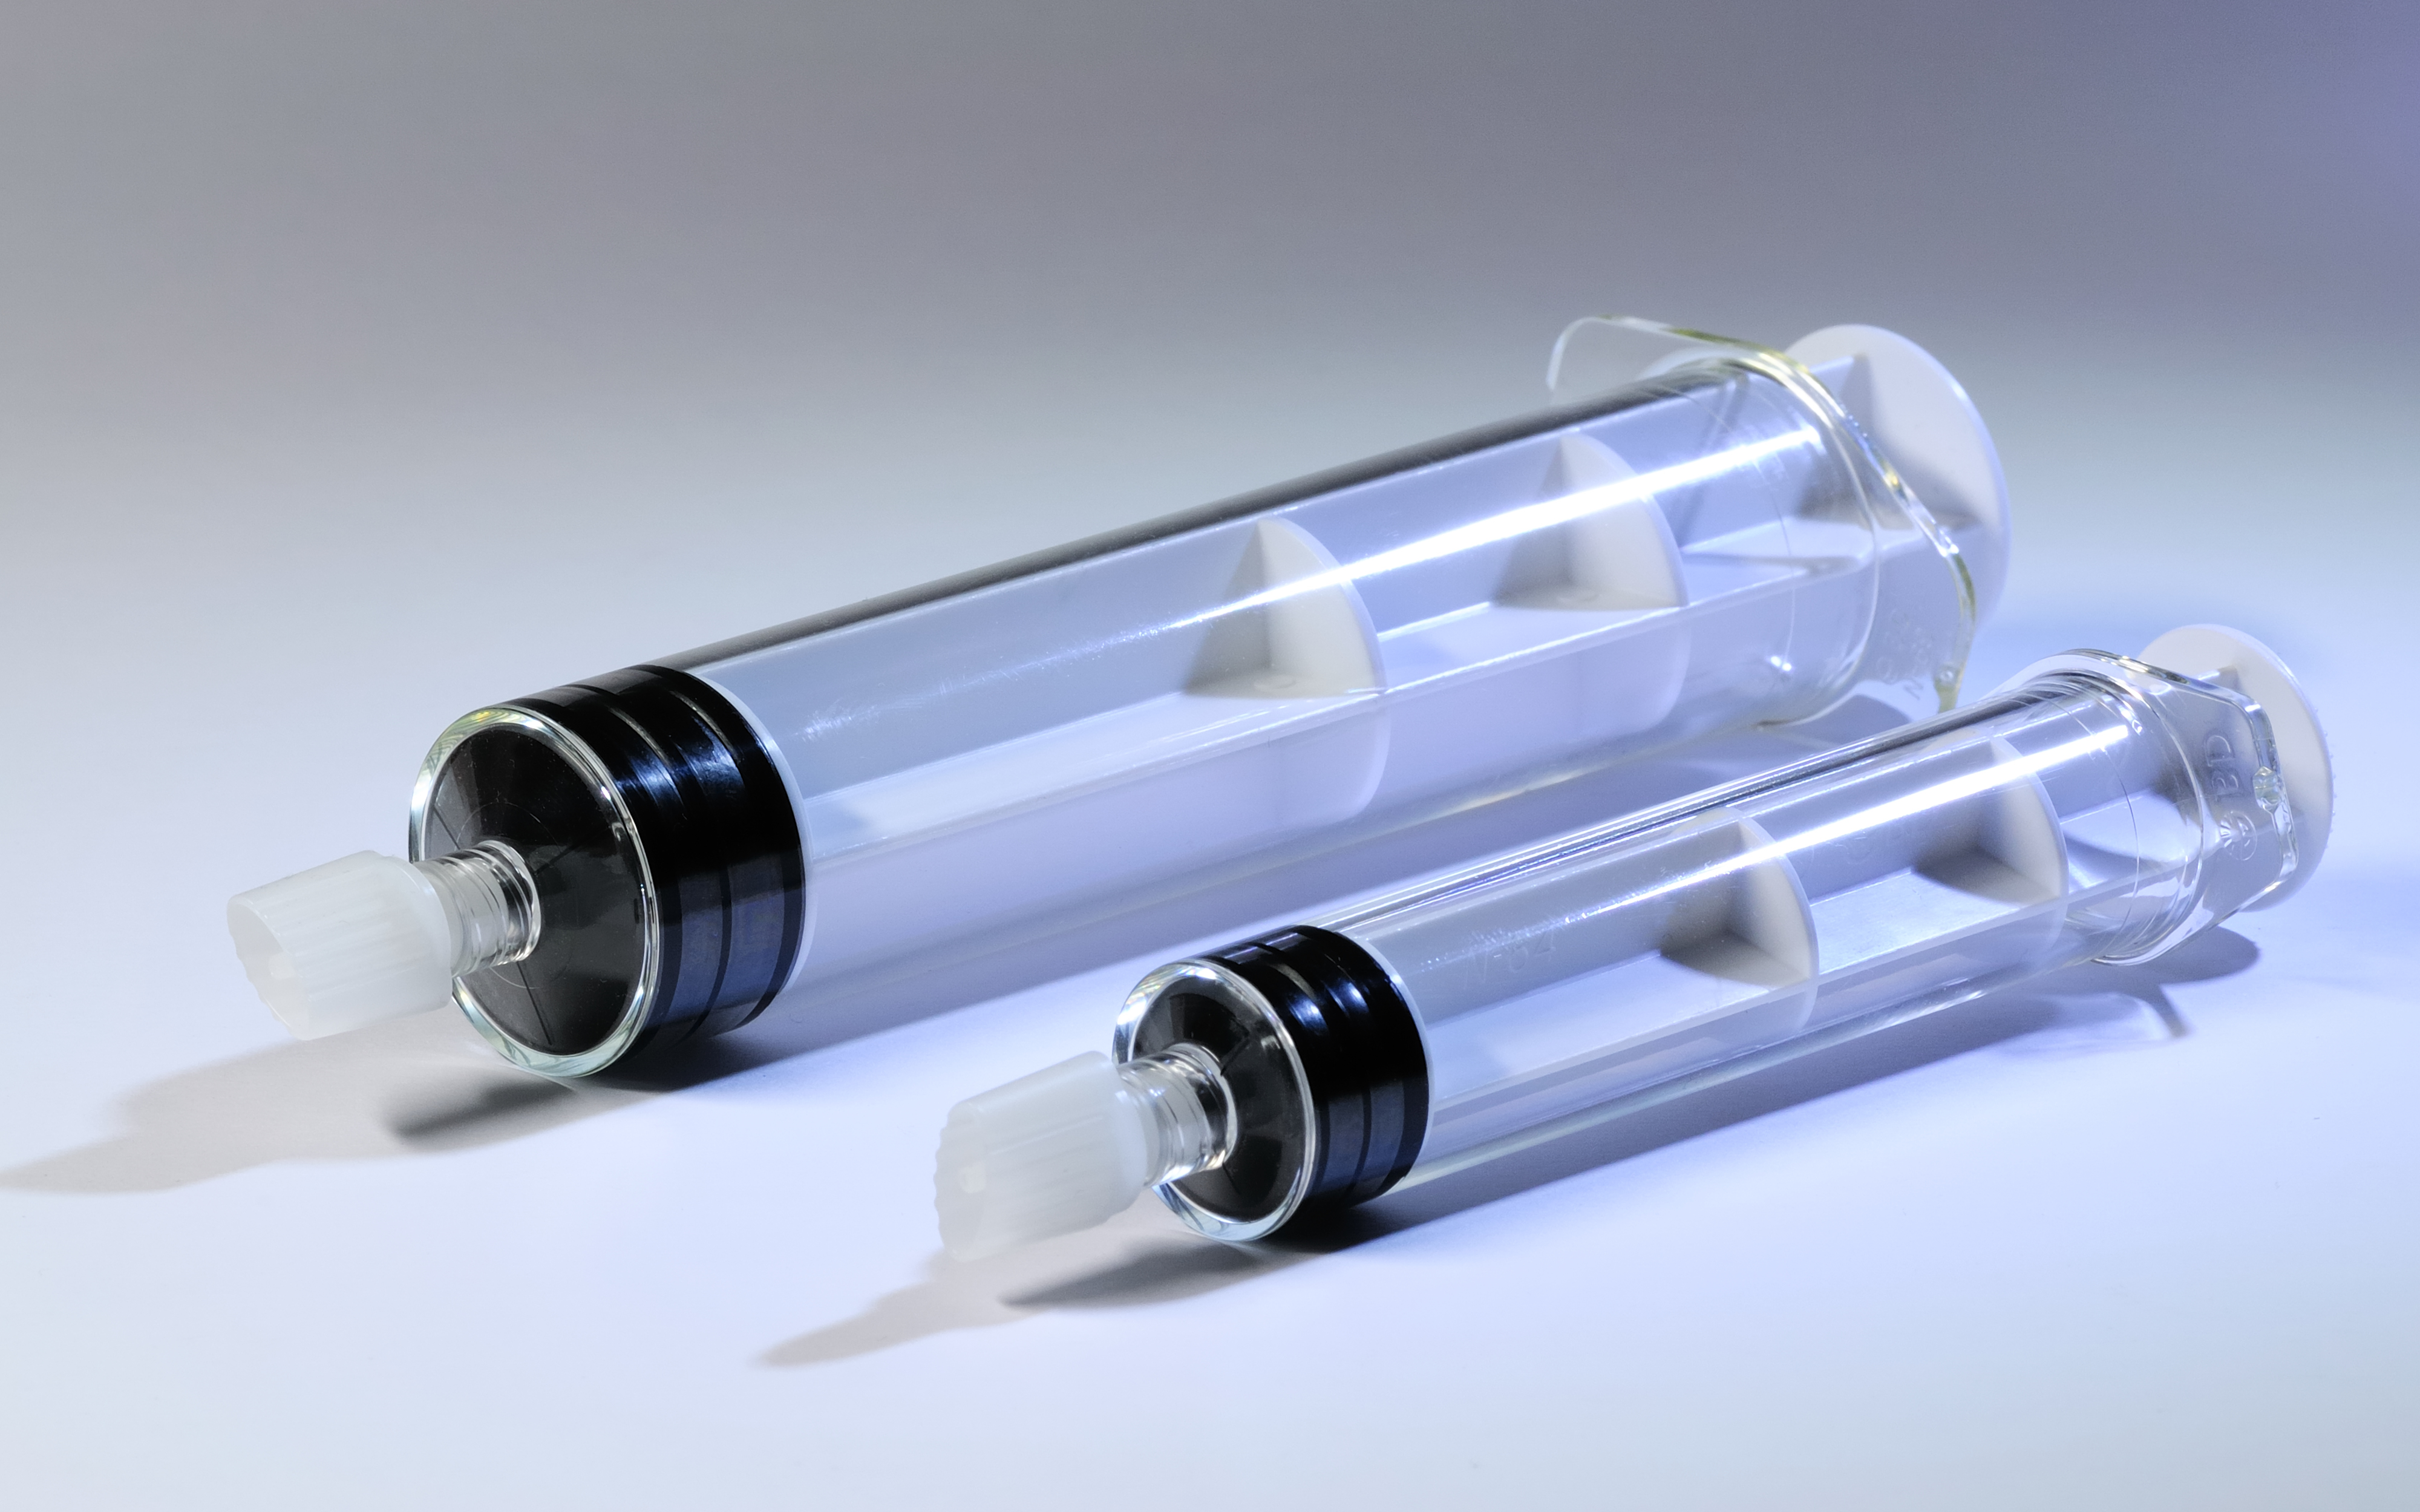 Pre-filled syringes